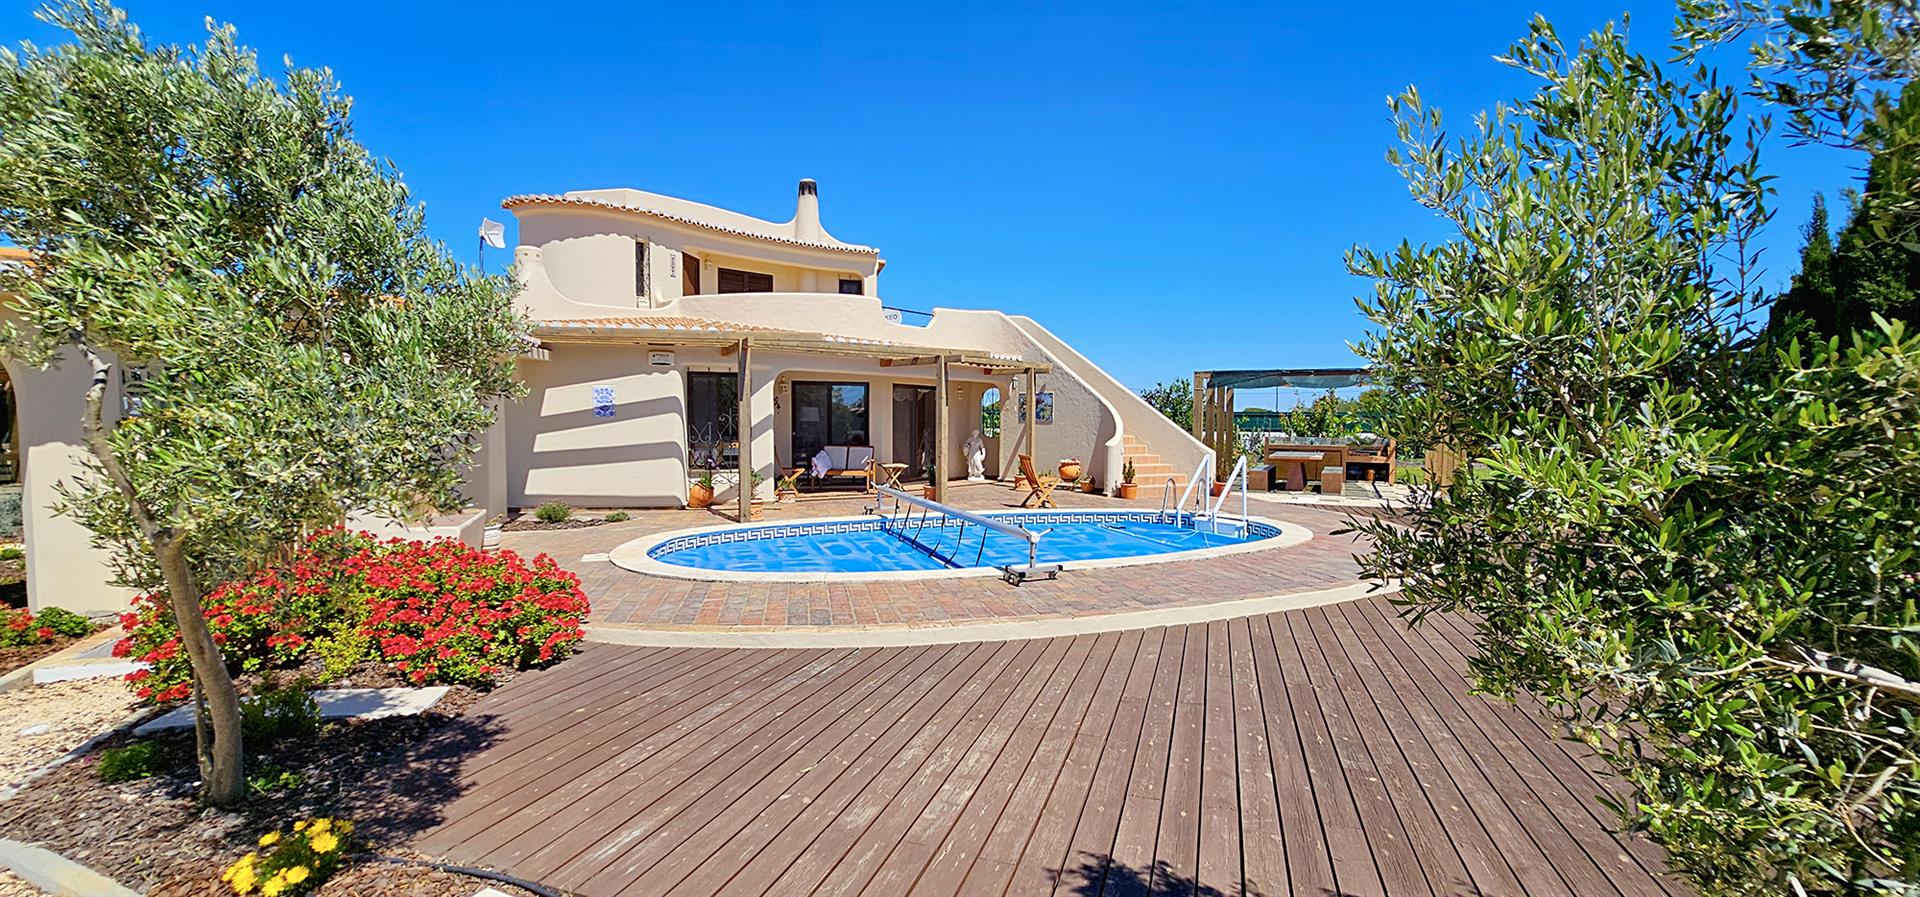 Välkommen till ditt framtida hem i vackra Algarve